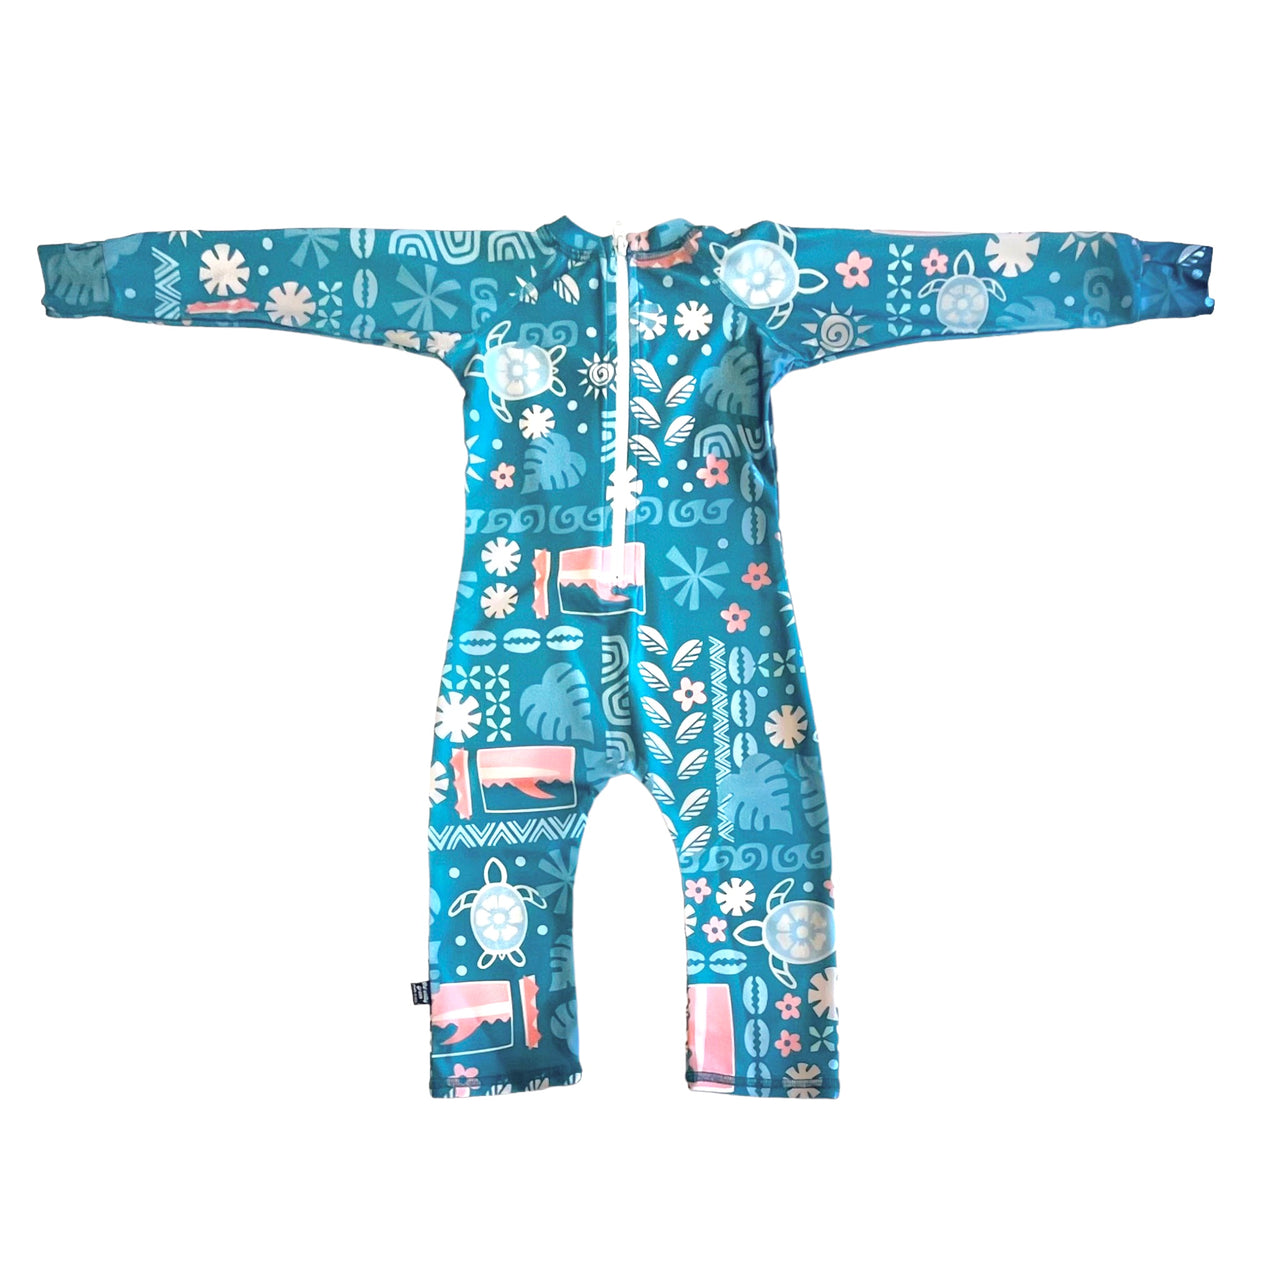 Infant/Toddler Full SHRED Suit